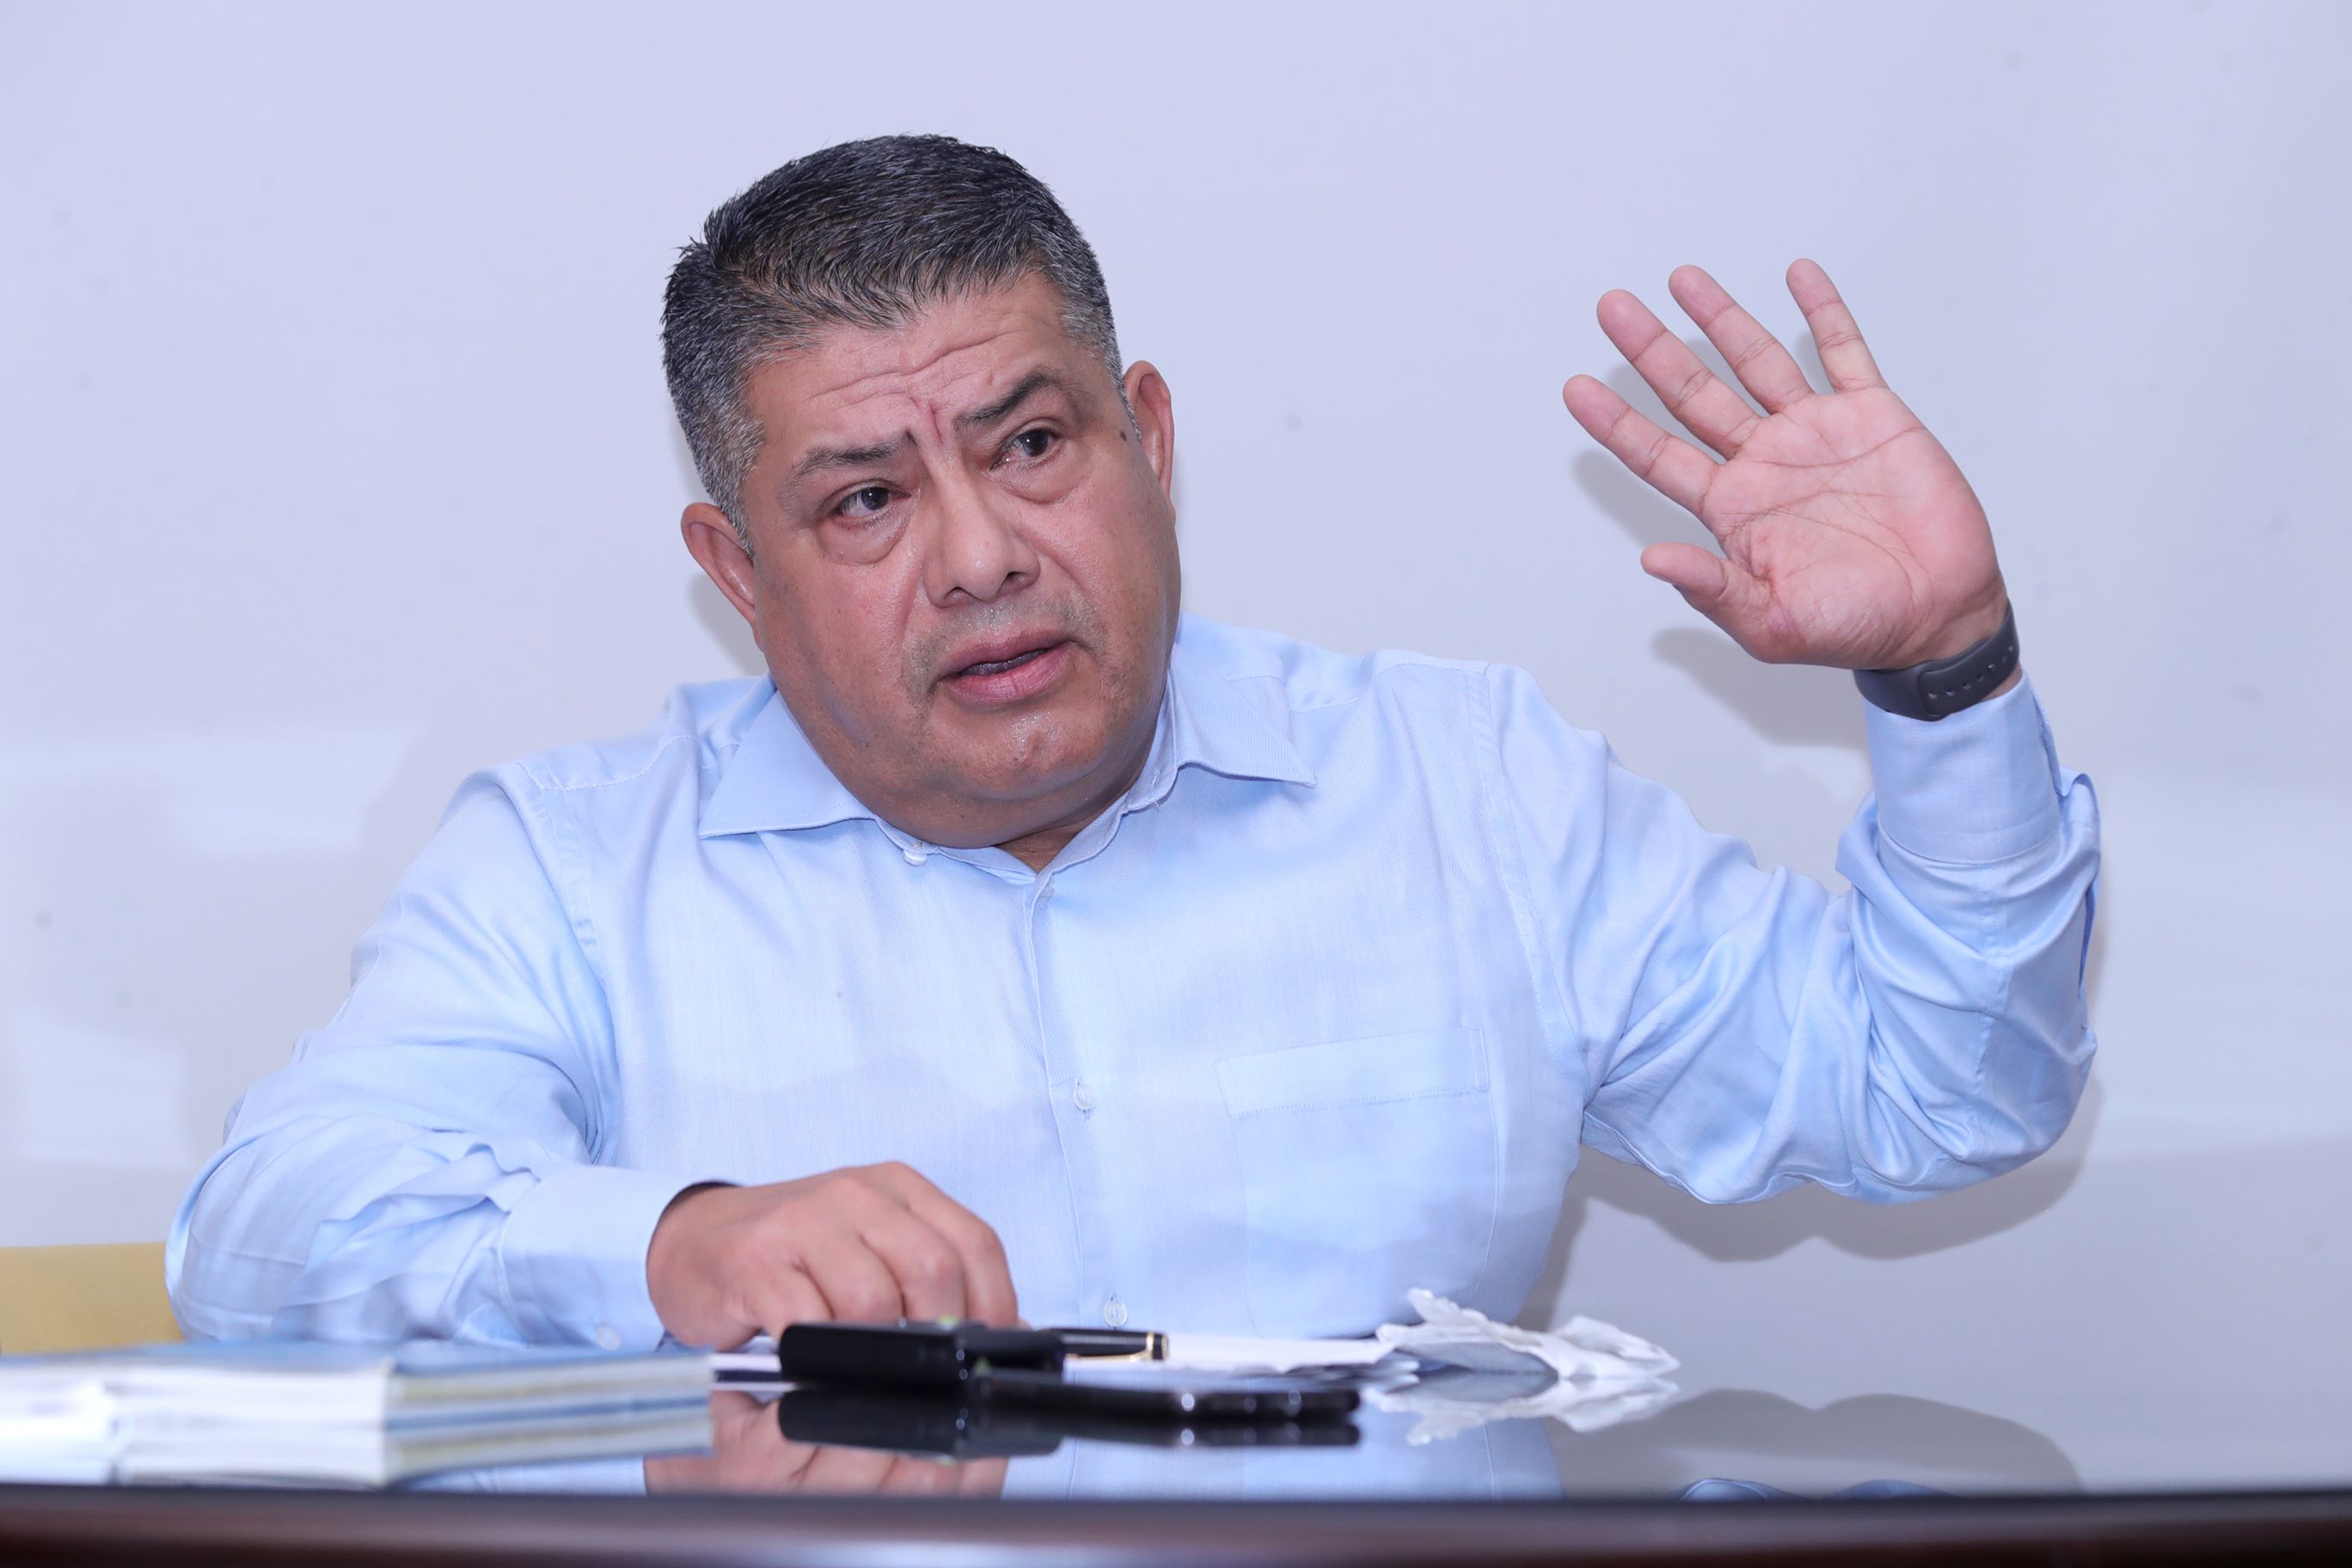 Jorge Luis Torres Carrillo, de 56 años, empezó su carrera como policía en 1987 y luego alcanzó puestos de jefatura. Además, se desempeñó como secretario general para América Latina de la Red Internacional de Antinarcóticos (RIAN).